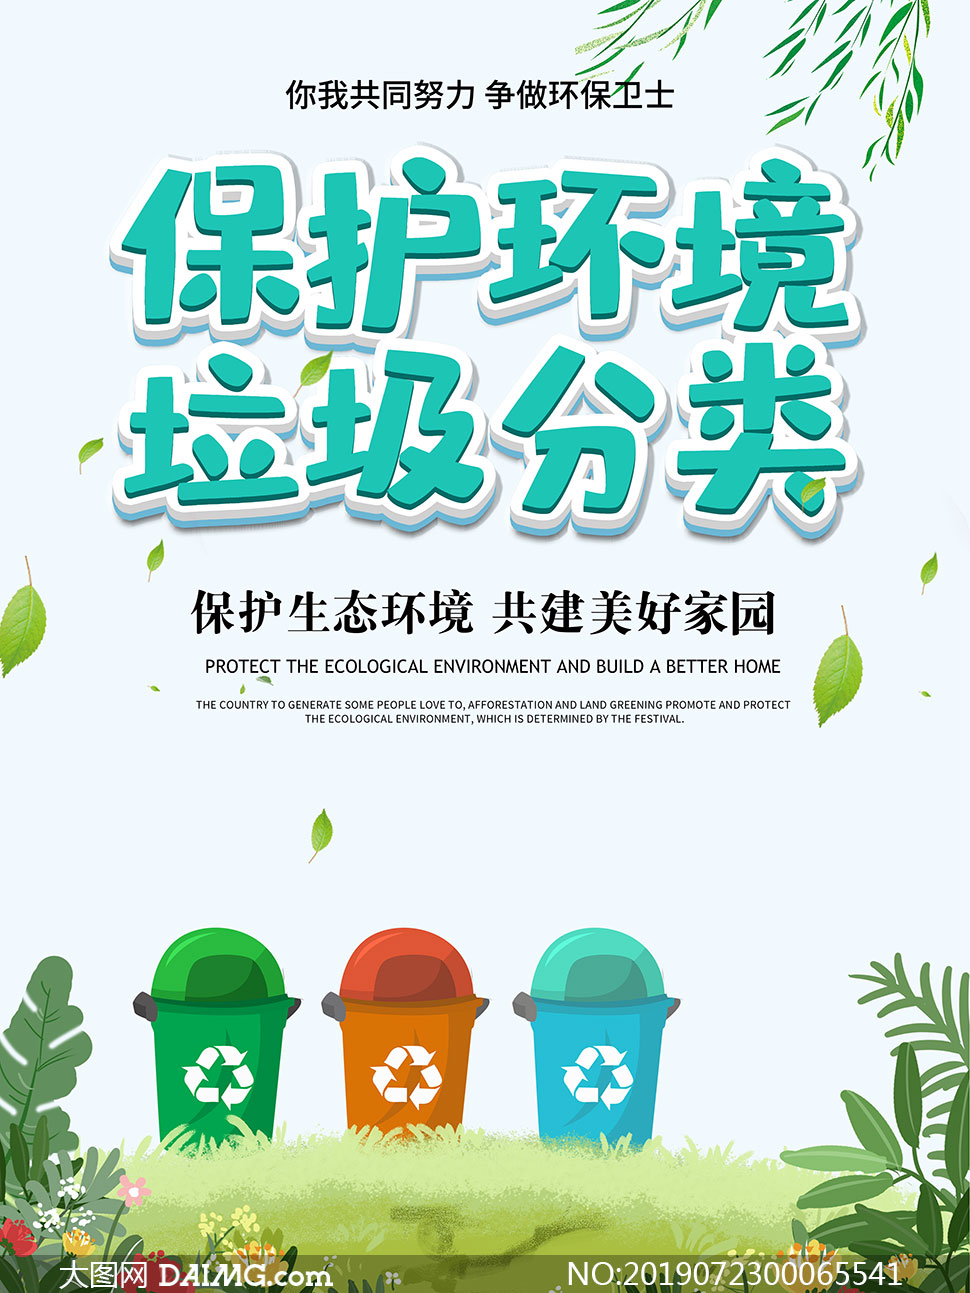 保护环境垃圾分类宣传单设计psd素材